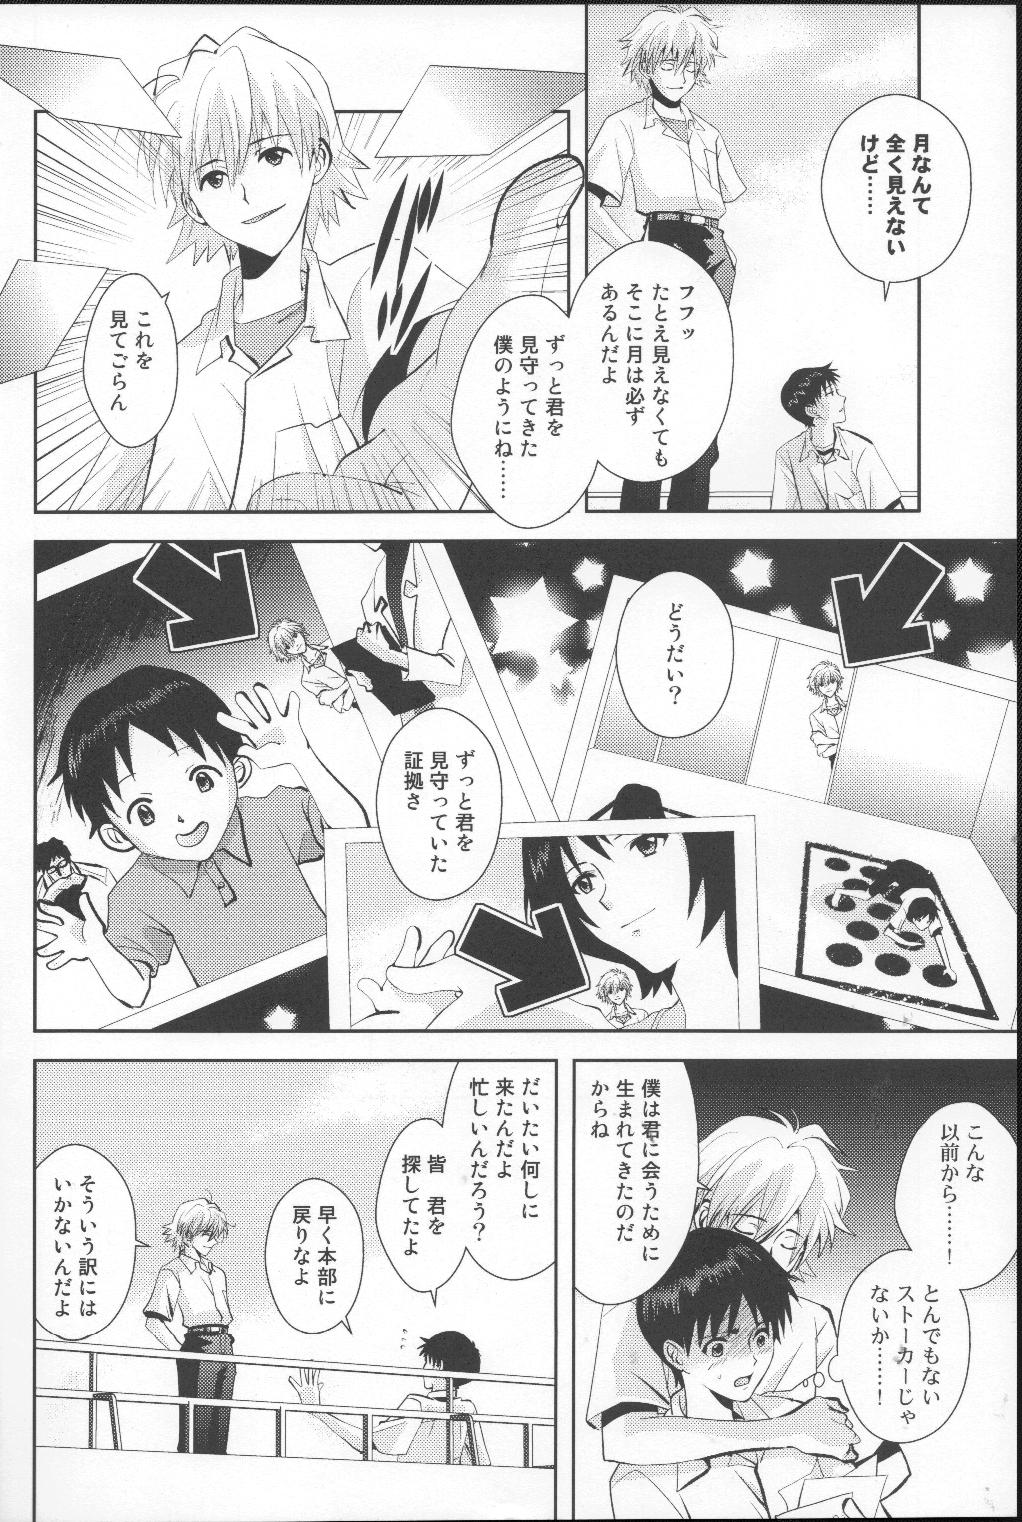 Smoking Tsuki ga Kirei da ne - Neon genesis evangelion Audition - Page 7